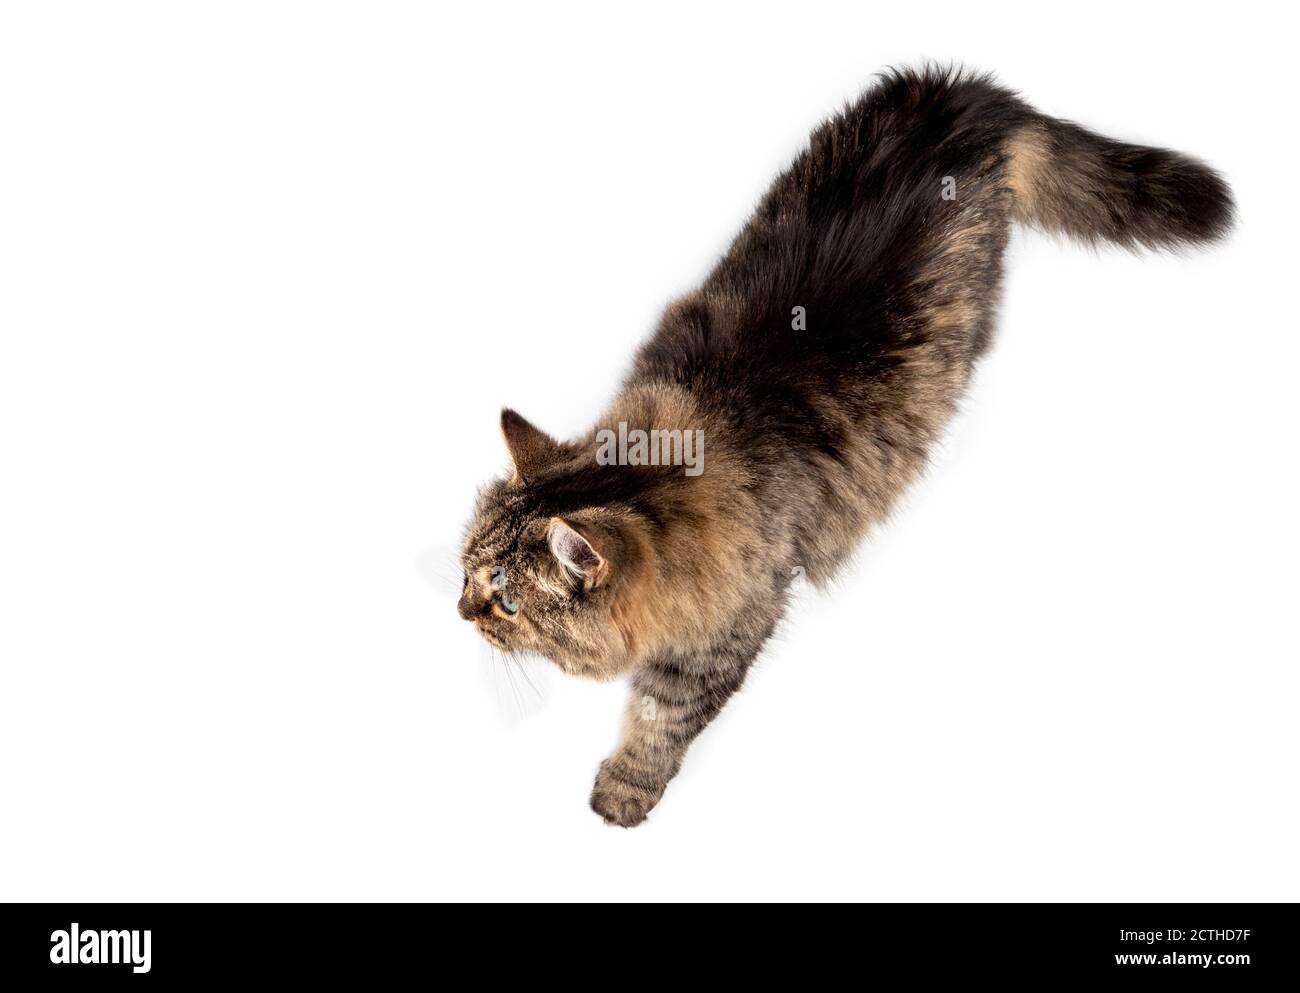 Draufsicht auf eine Katze, die entspannt von rechts nach links geht. Ganzer Körper von langen Haaren weibliche tabby ältere Katze (14 Jahre) mit einer Pfote nach vorne. Isoliert. Stockfoto